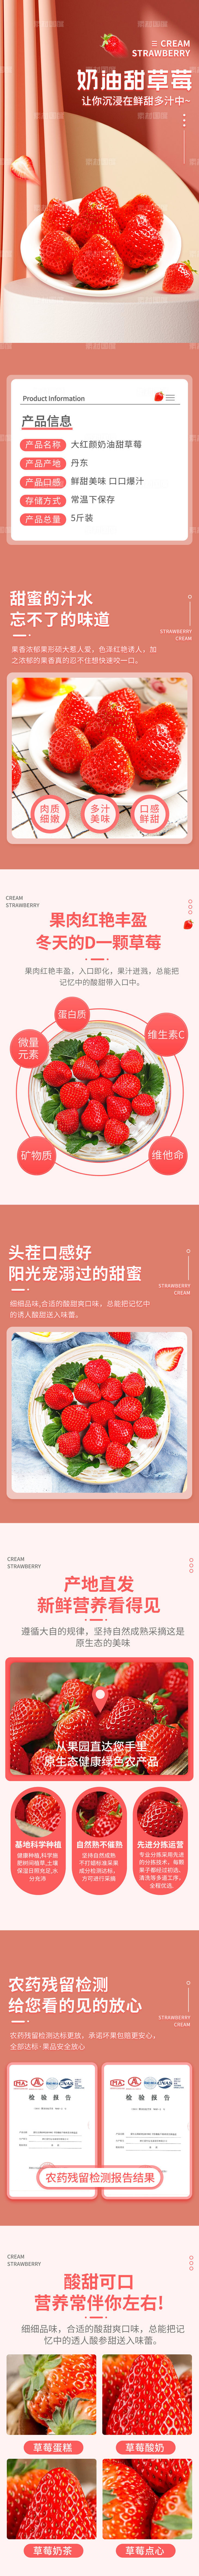 草莓 详情页